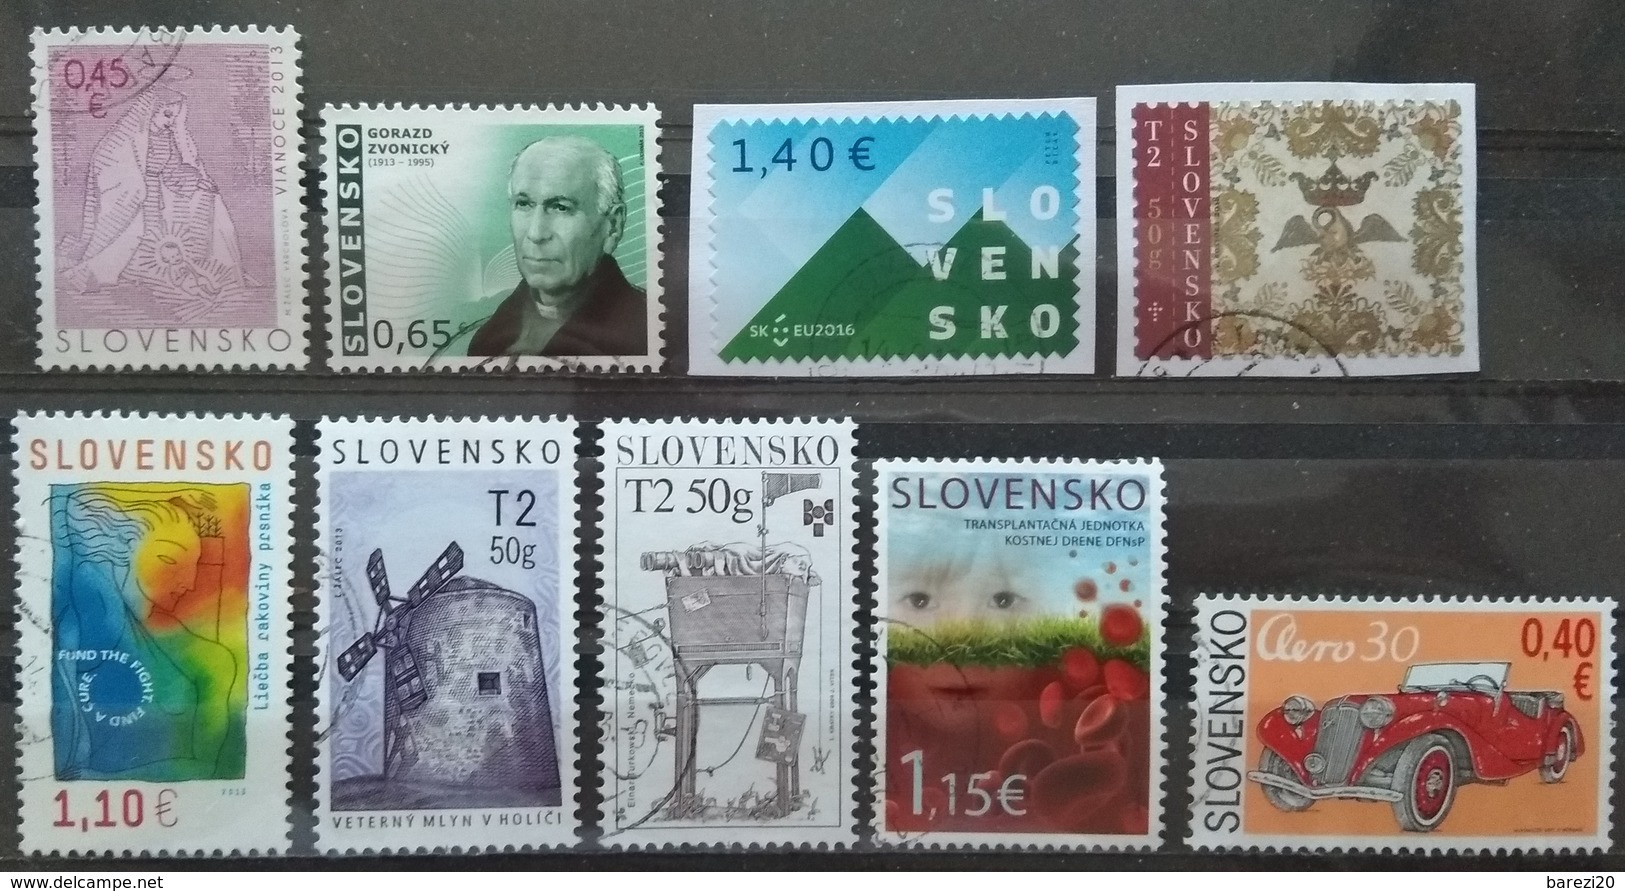 120 used postage stamps Slovakia